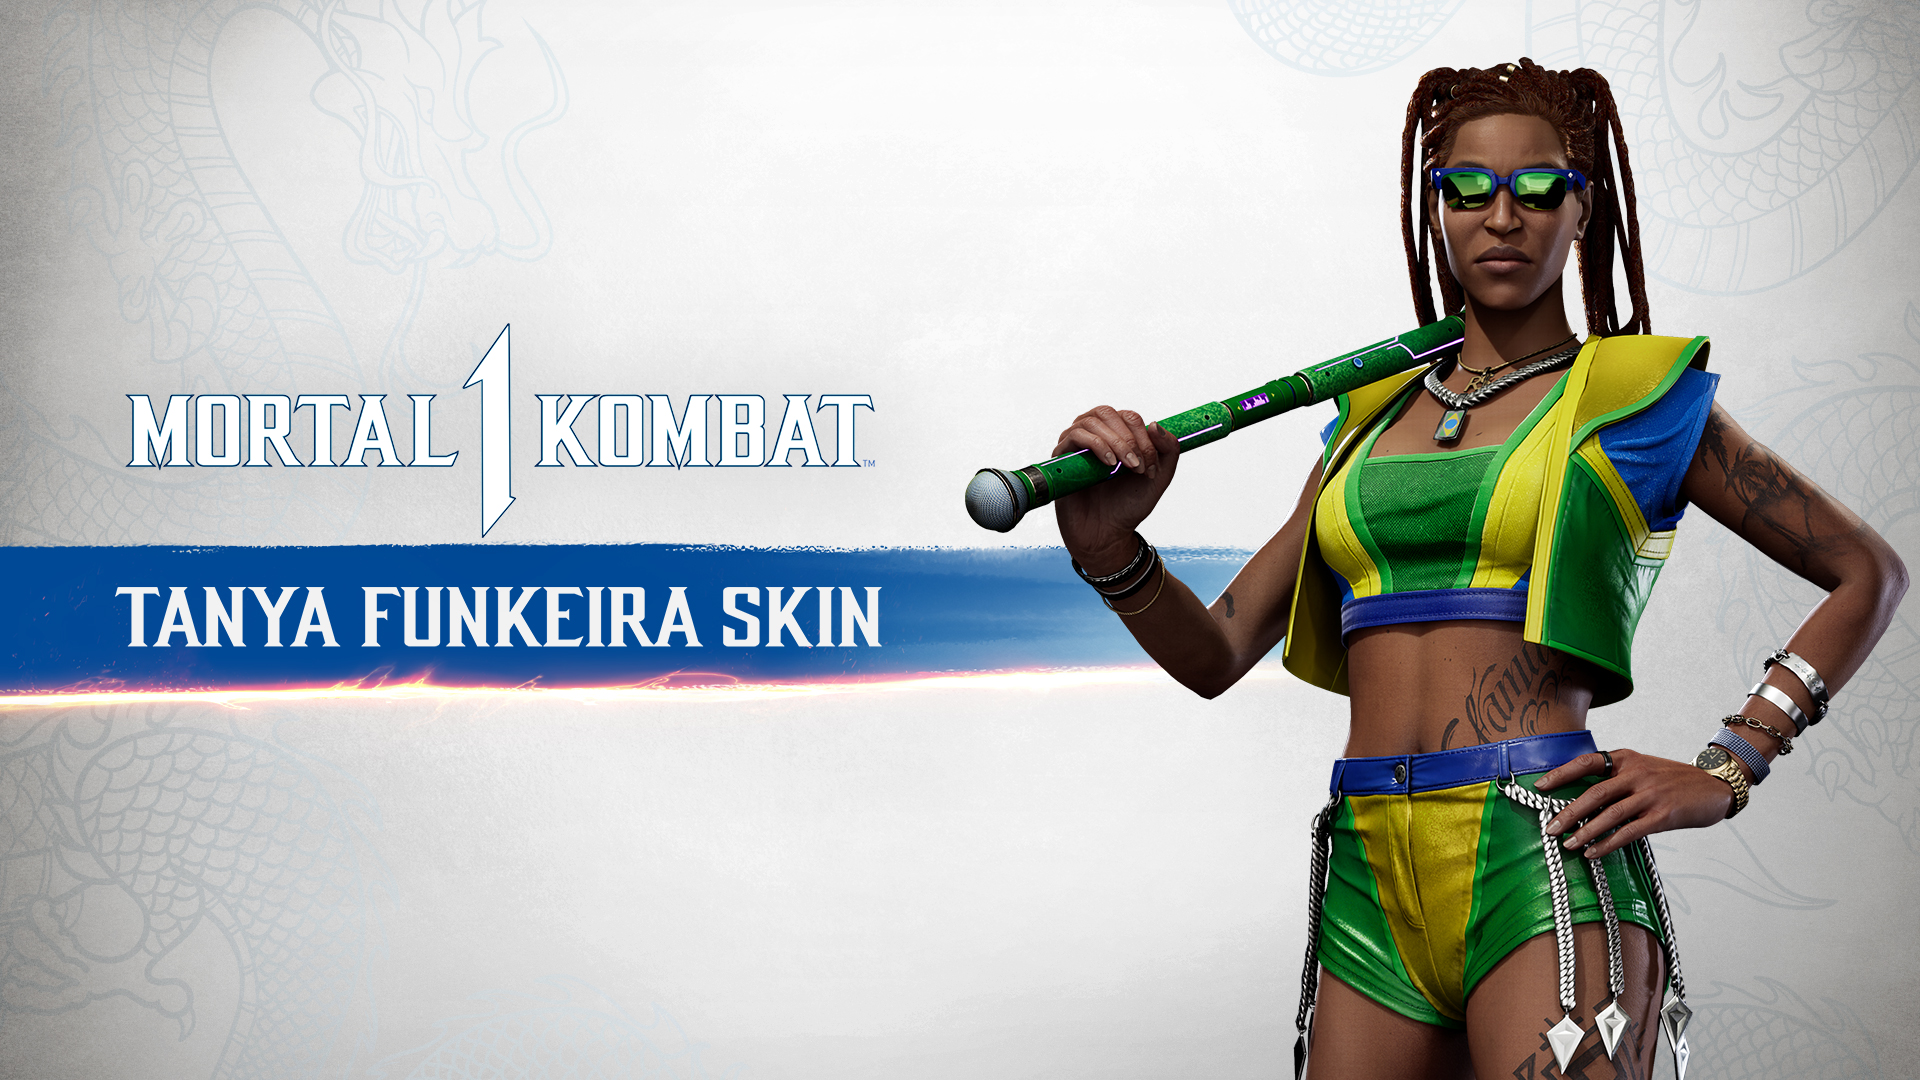 MK1: Tanya Funkeira Skin